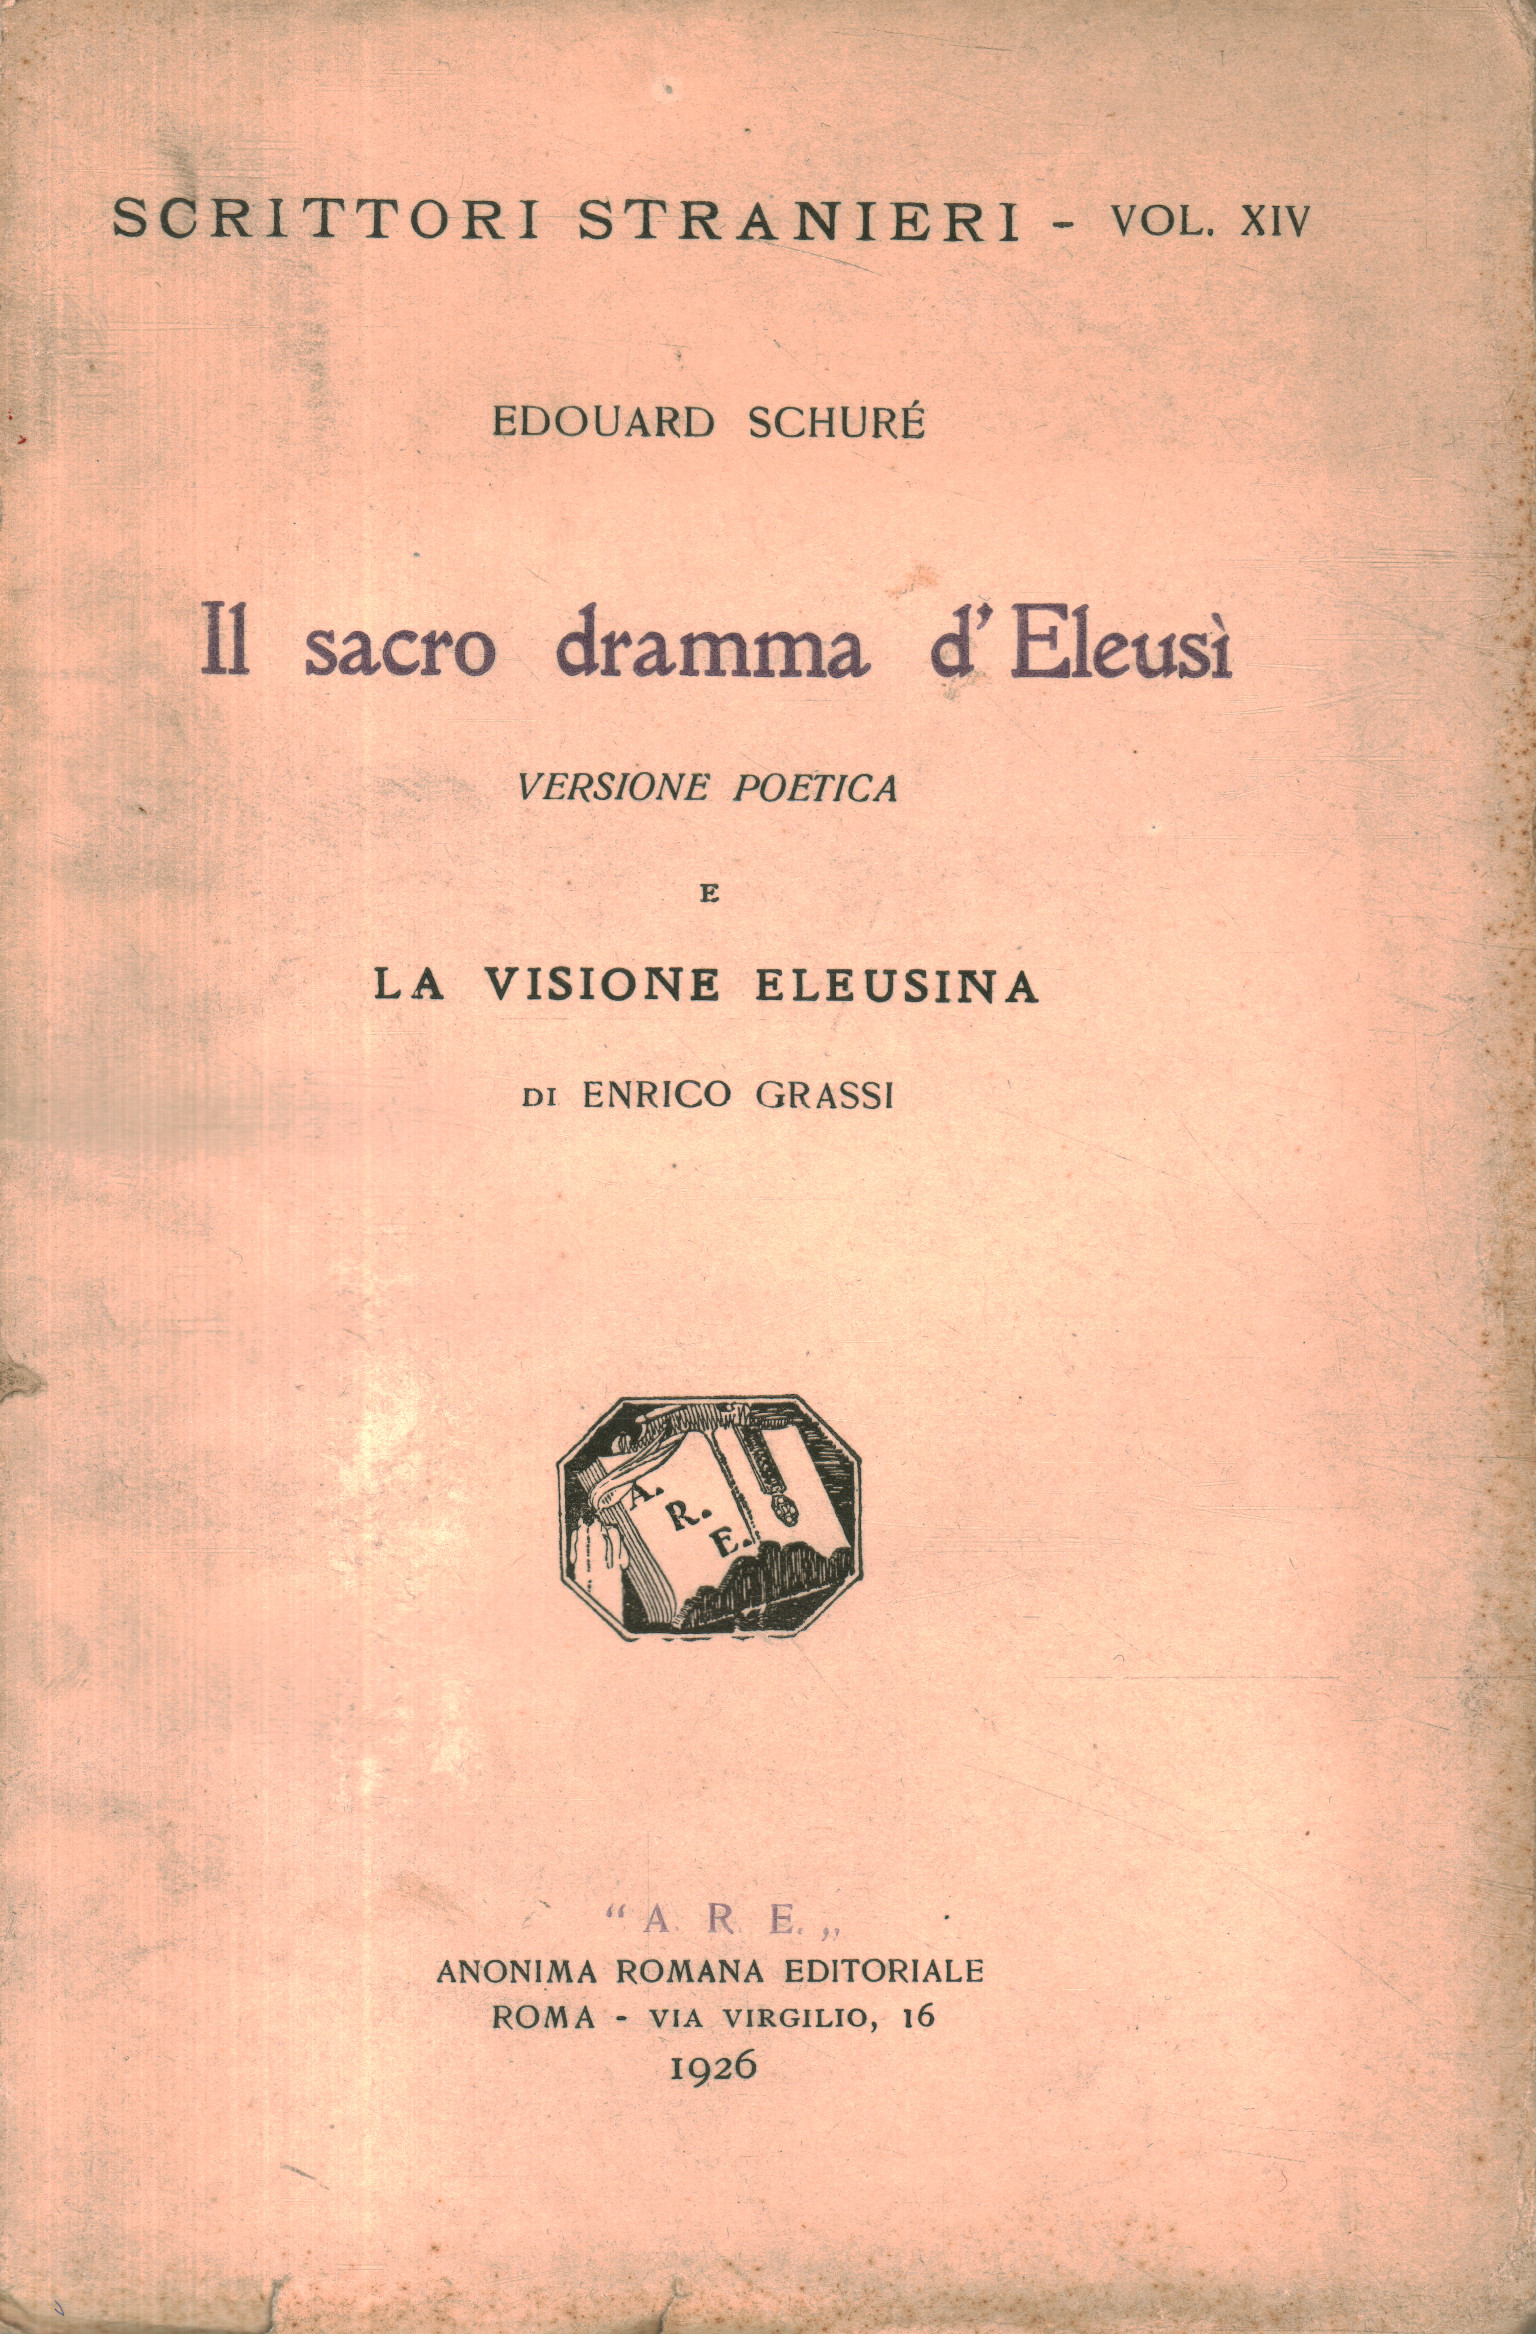 Eduardo Schuré. el drama sagrado d0a